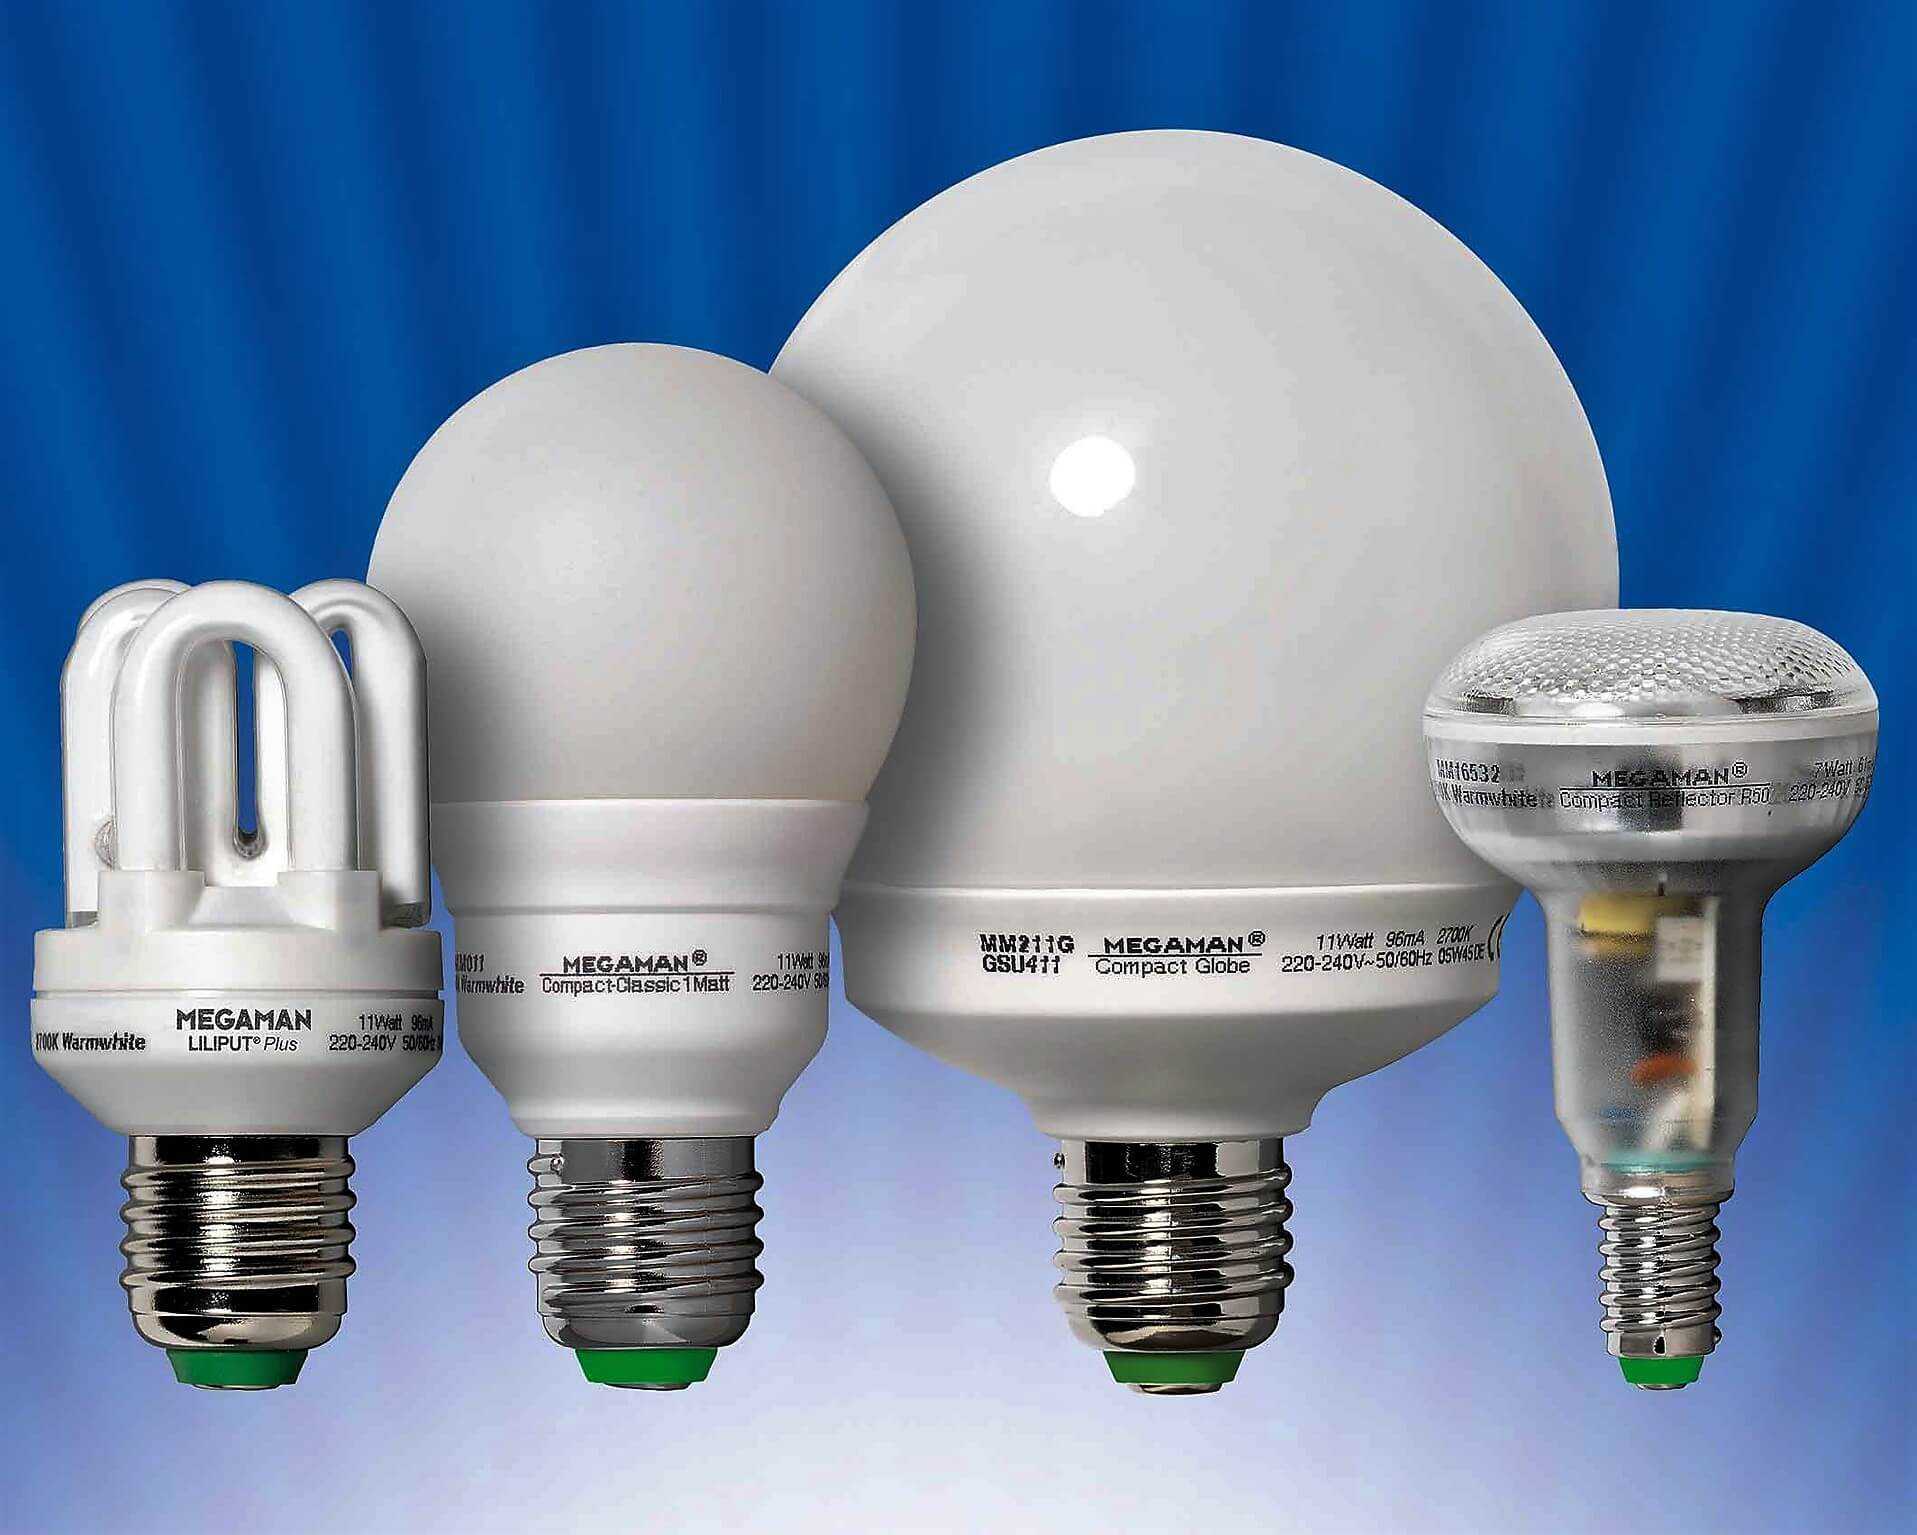 Энергосберегающие лампы: плюсы и минусы, виды и их характеристики | советы специалистов